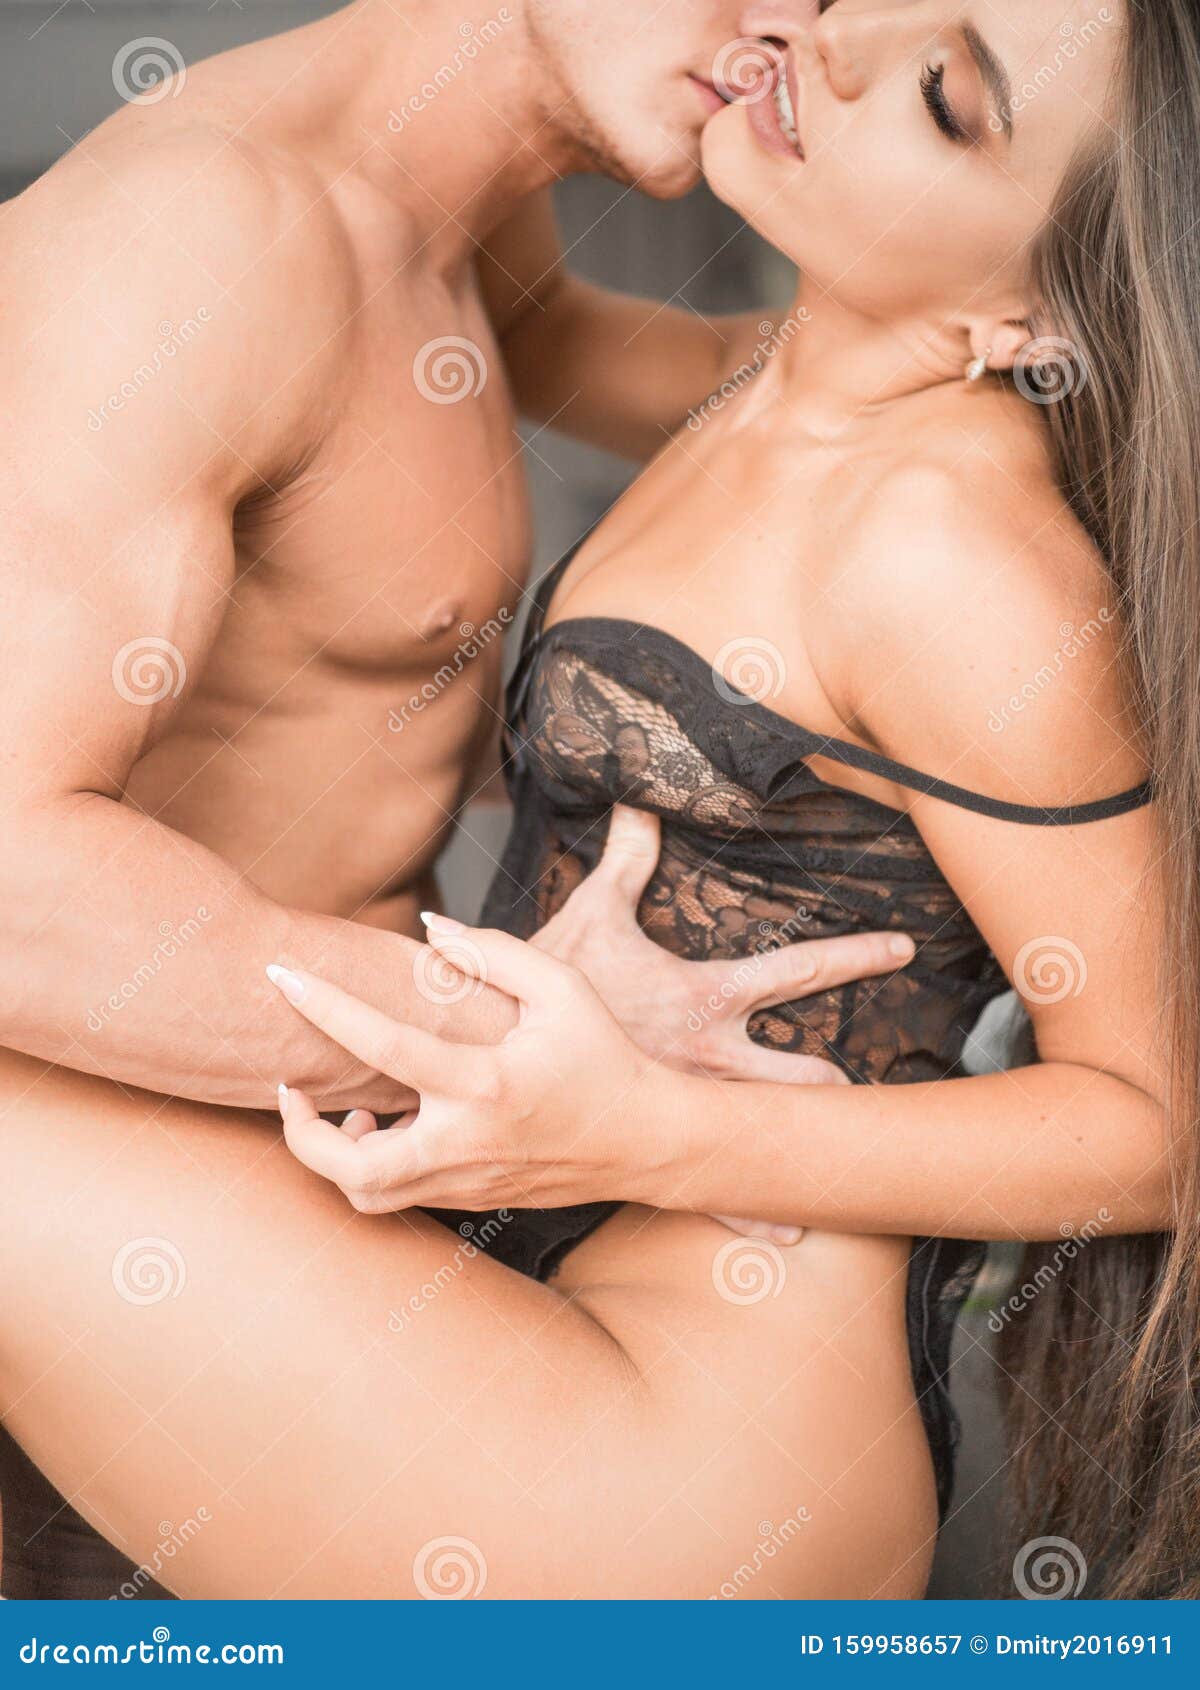 Imagenes teniendo relaciones sexuales